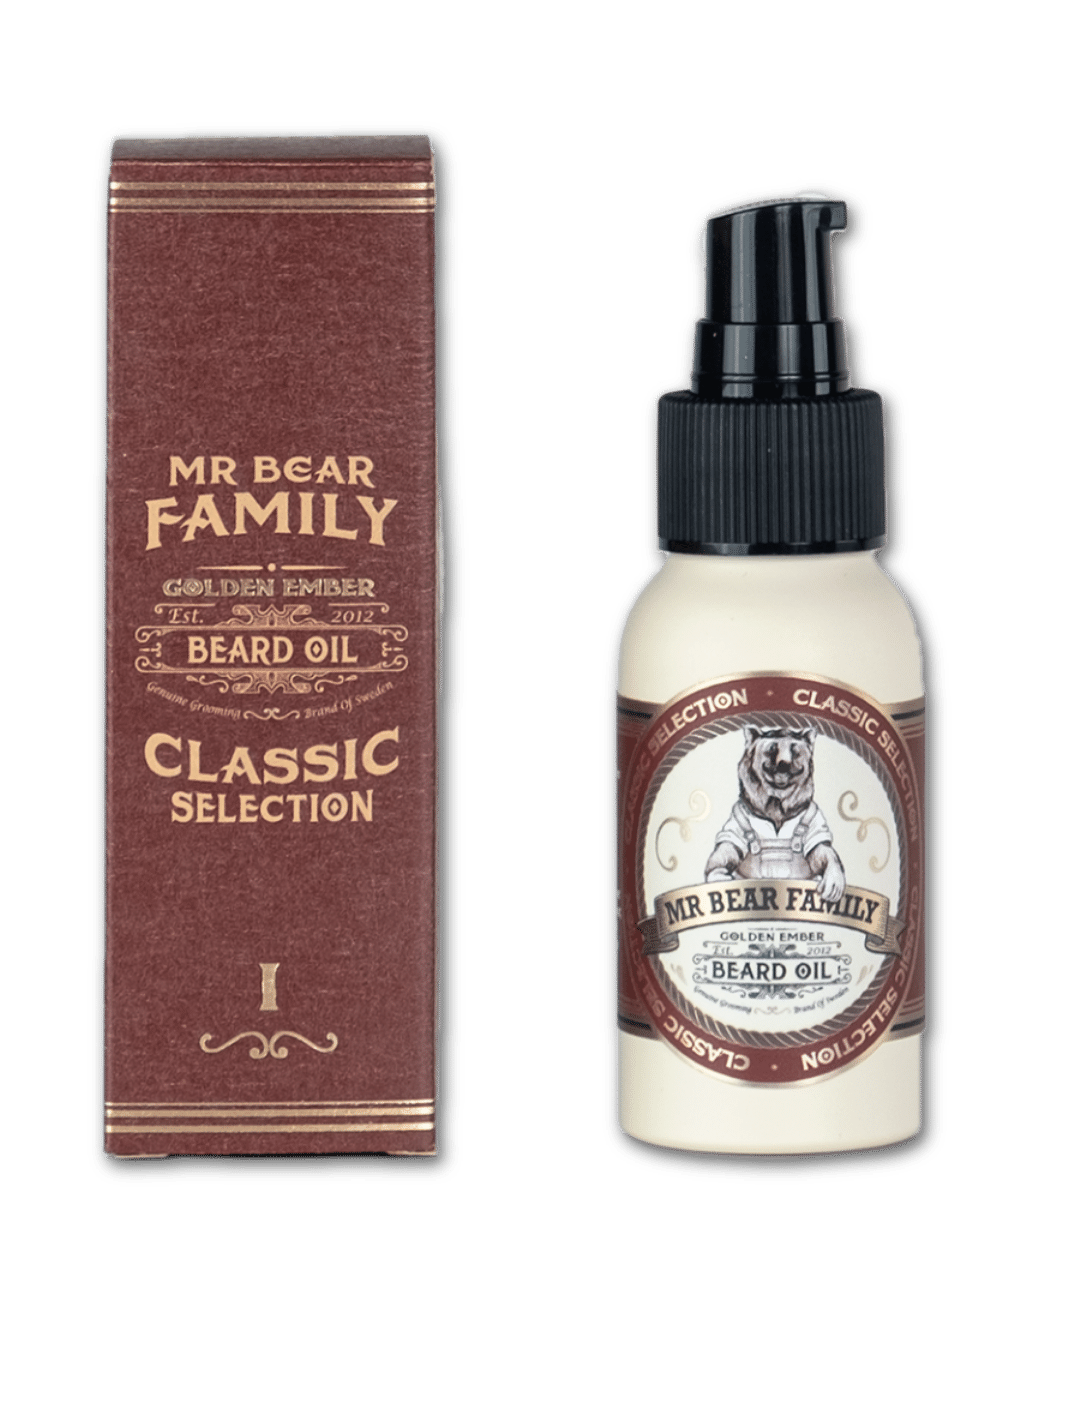 Mr. Bear Family Bartöl Golden Ember, 50ml Flasche, angereichert mit natürlichen Ölen für Glanz und Geschmeidigkeit des Bartes, in einer eleganten Flasche mit goldener Beschriftung, erhältlich bei Phullcutz.